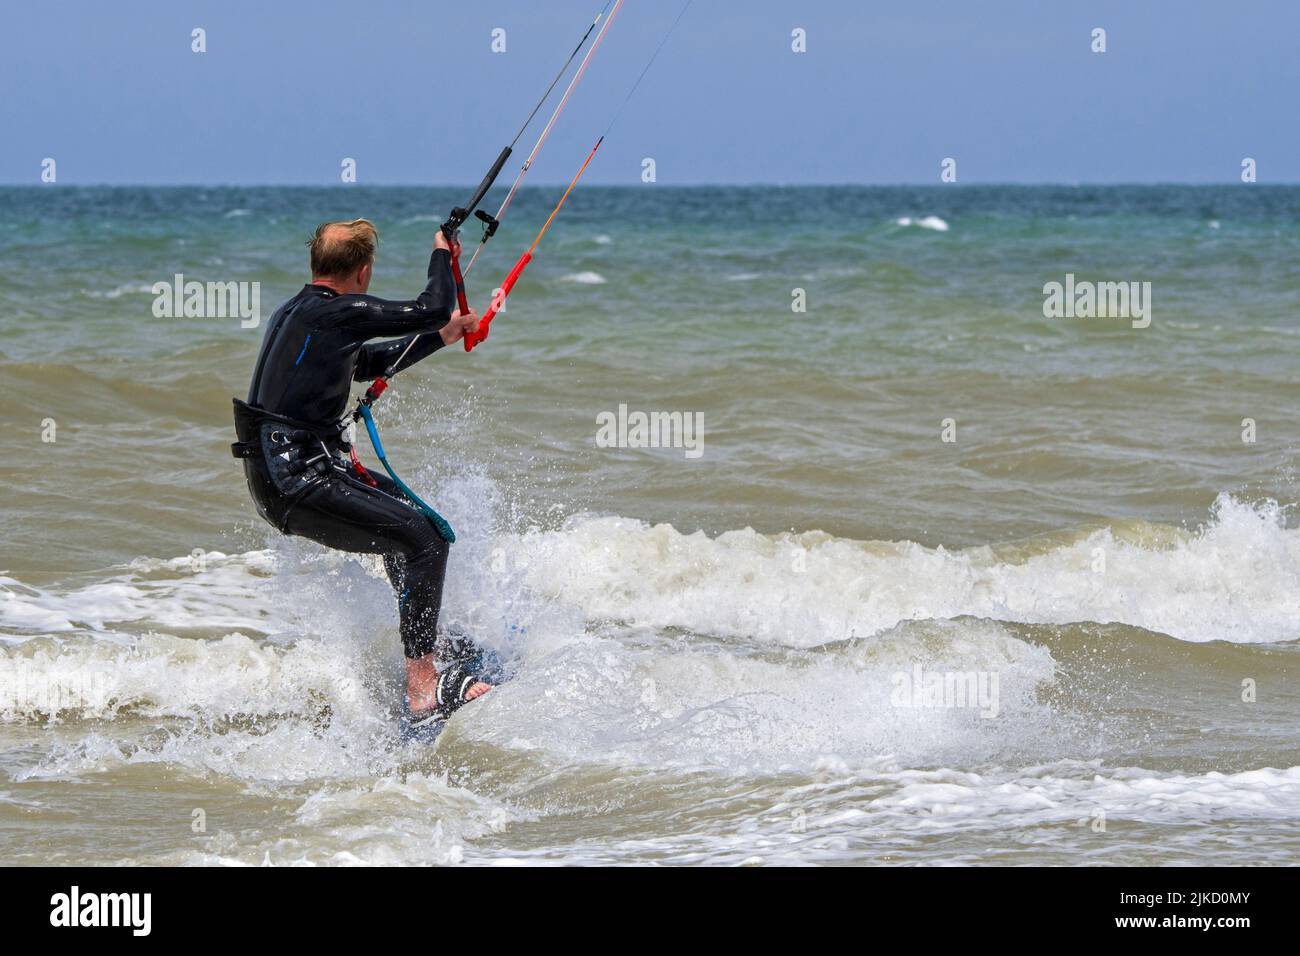 Kiteboarder / kitesurfer wearing wetsuit on twintip board kitesurfing on the North Sea Stock Photo